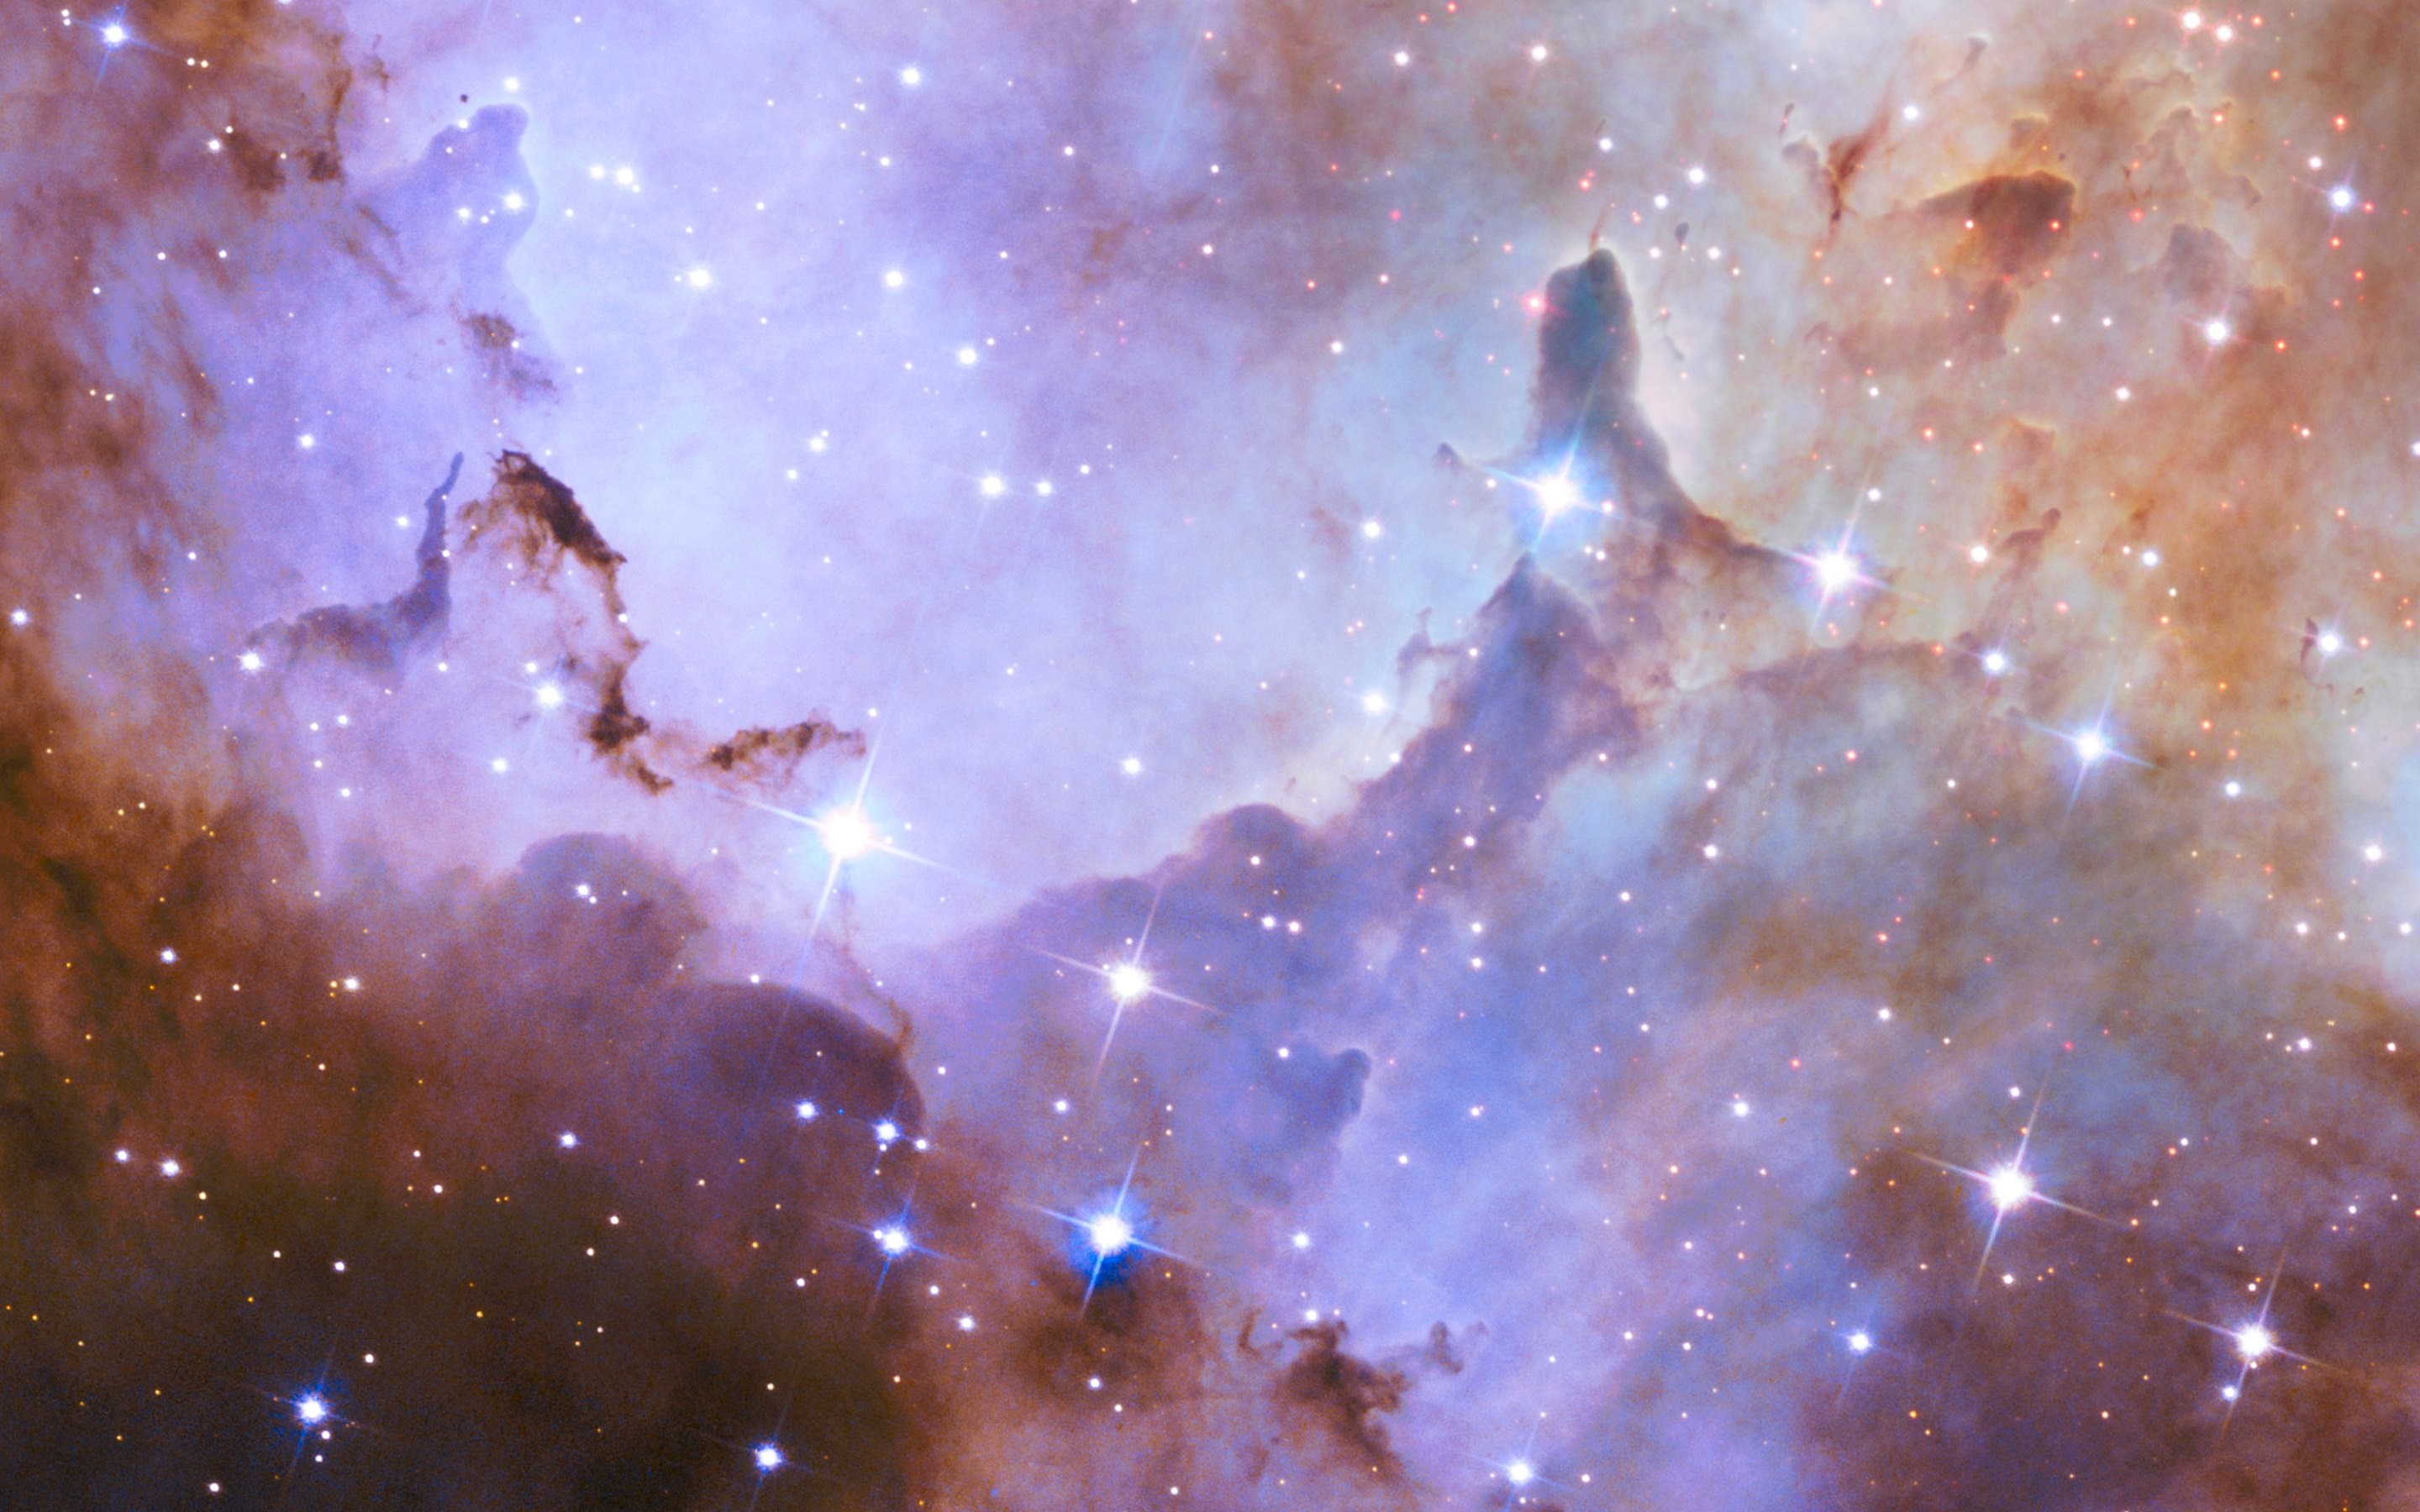 Wallpaper - Hd Hubble Space Telescope - HD Wallpaper 